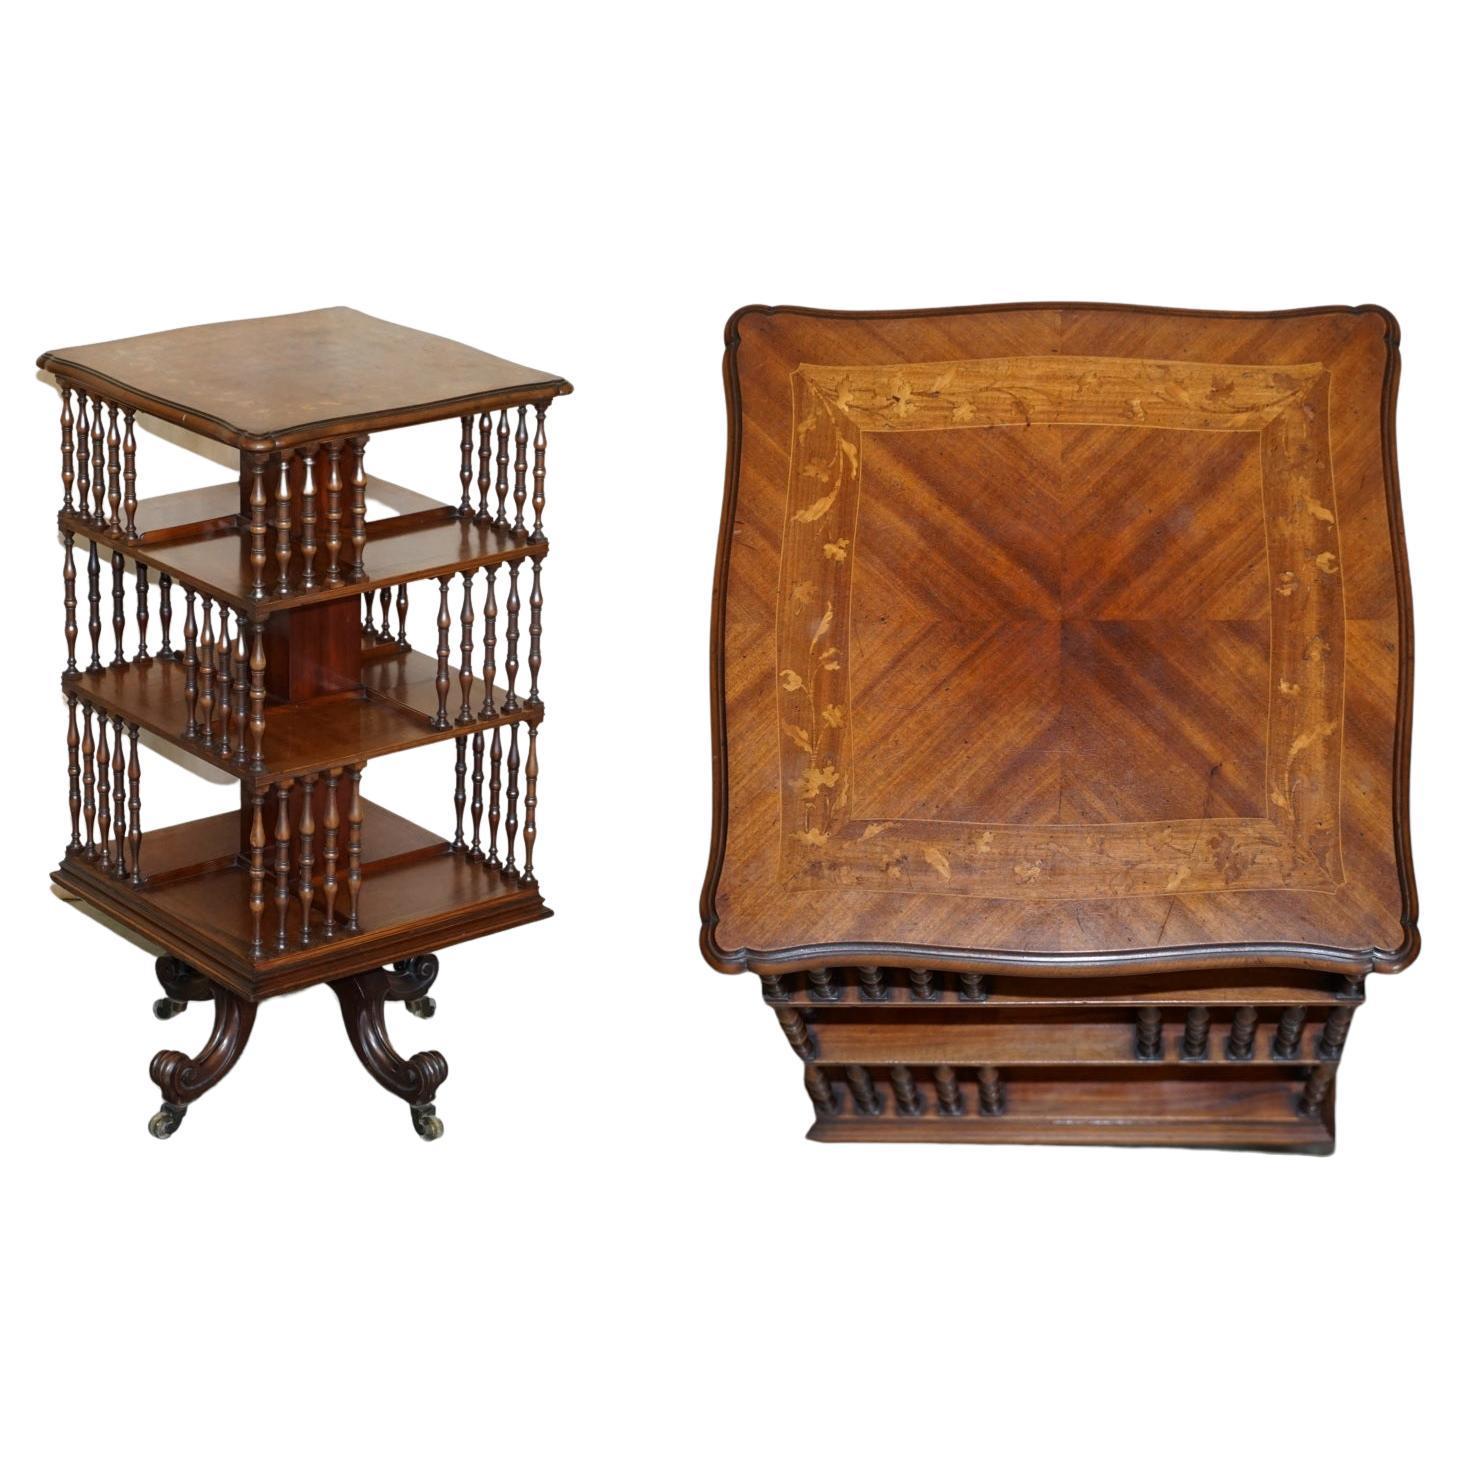 Exquisite circa 1880 Antique Victorian Hardwood Revolving Bookcase Book Table